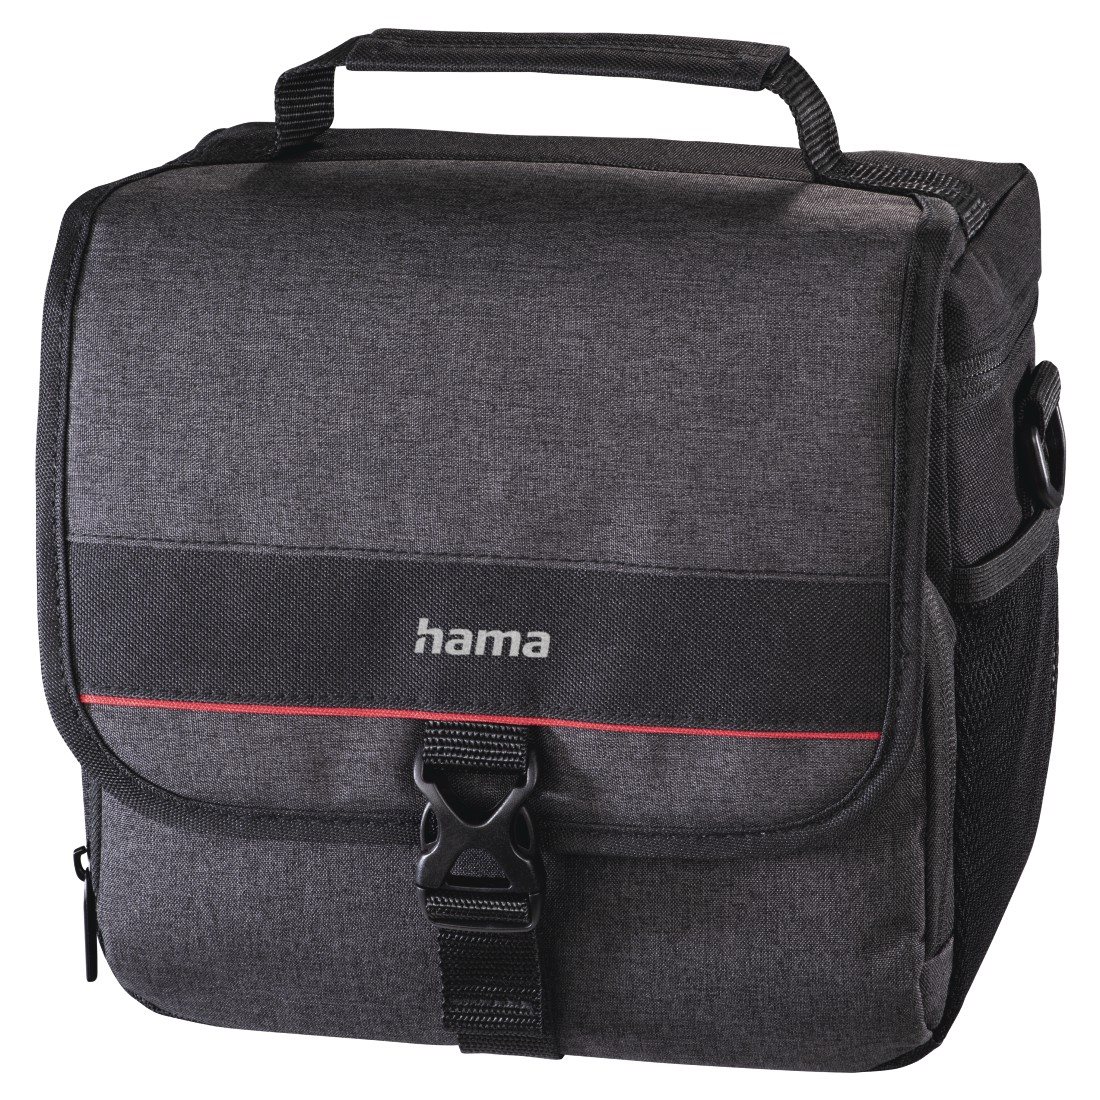 Hama "Valletta" Camera Bag, 140, black